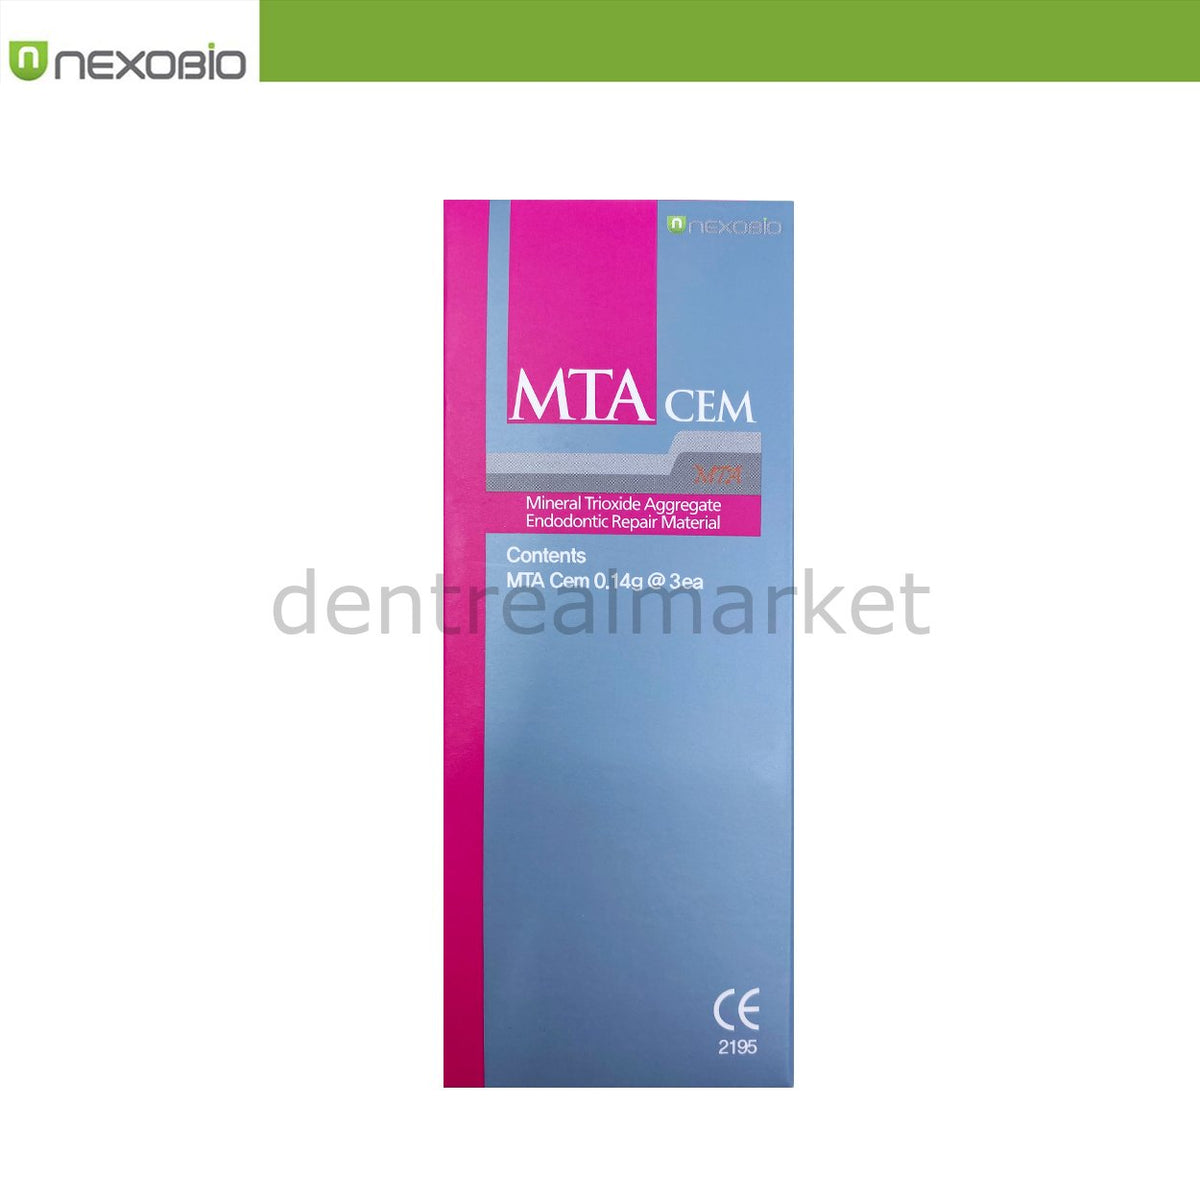 DentrealStore - Nexobio Mta Cem - 3 Applied